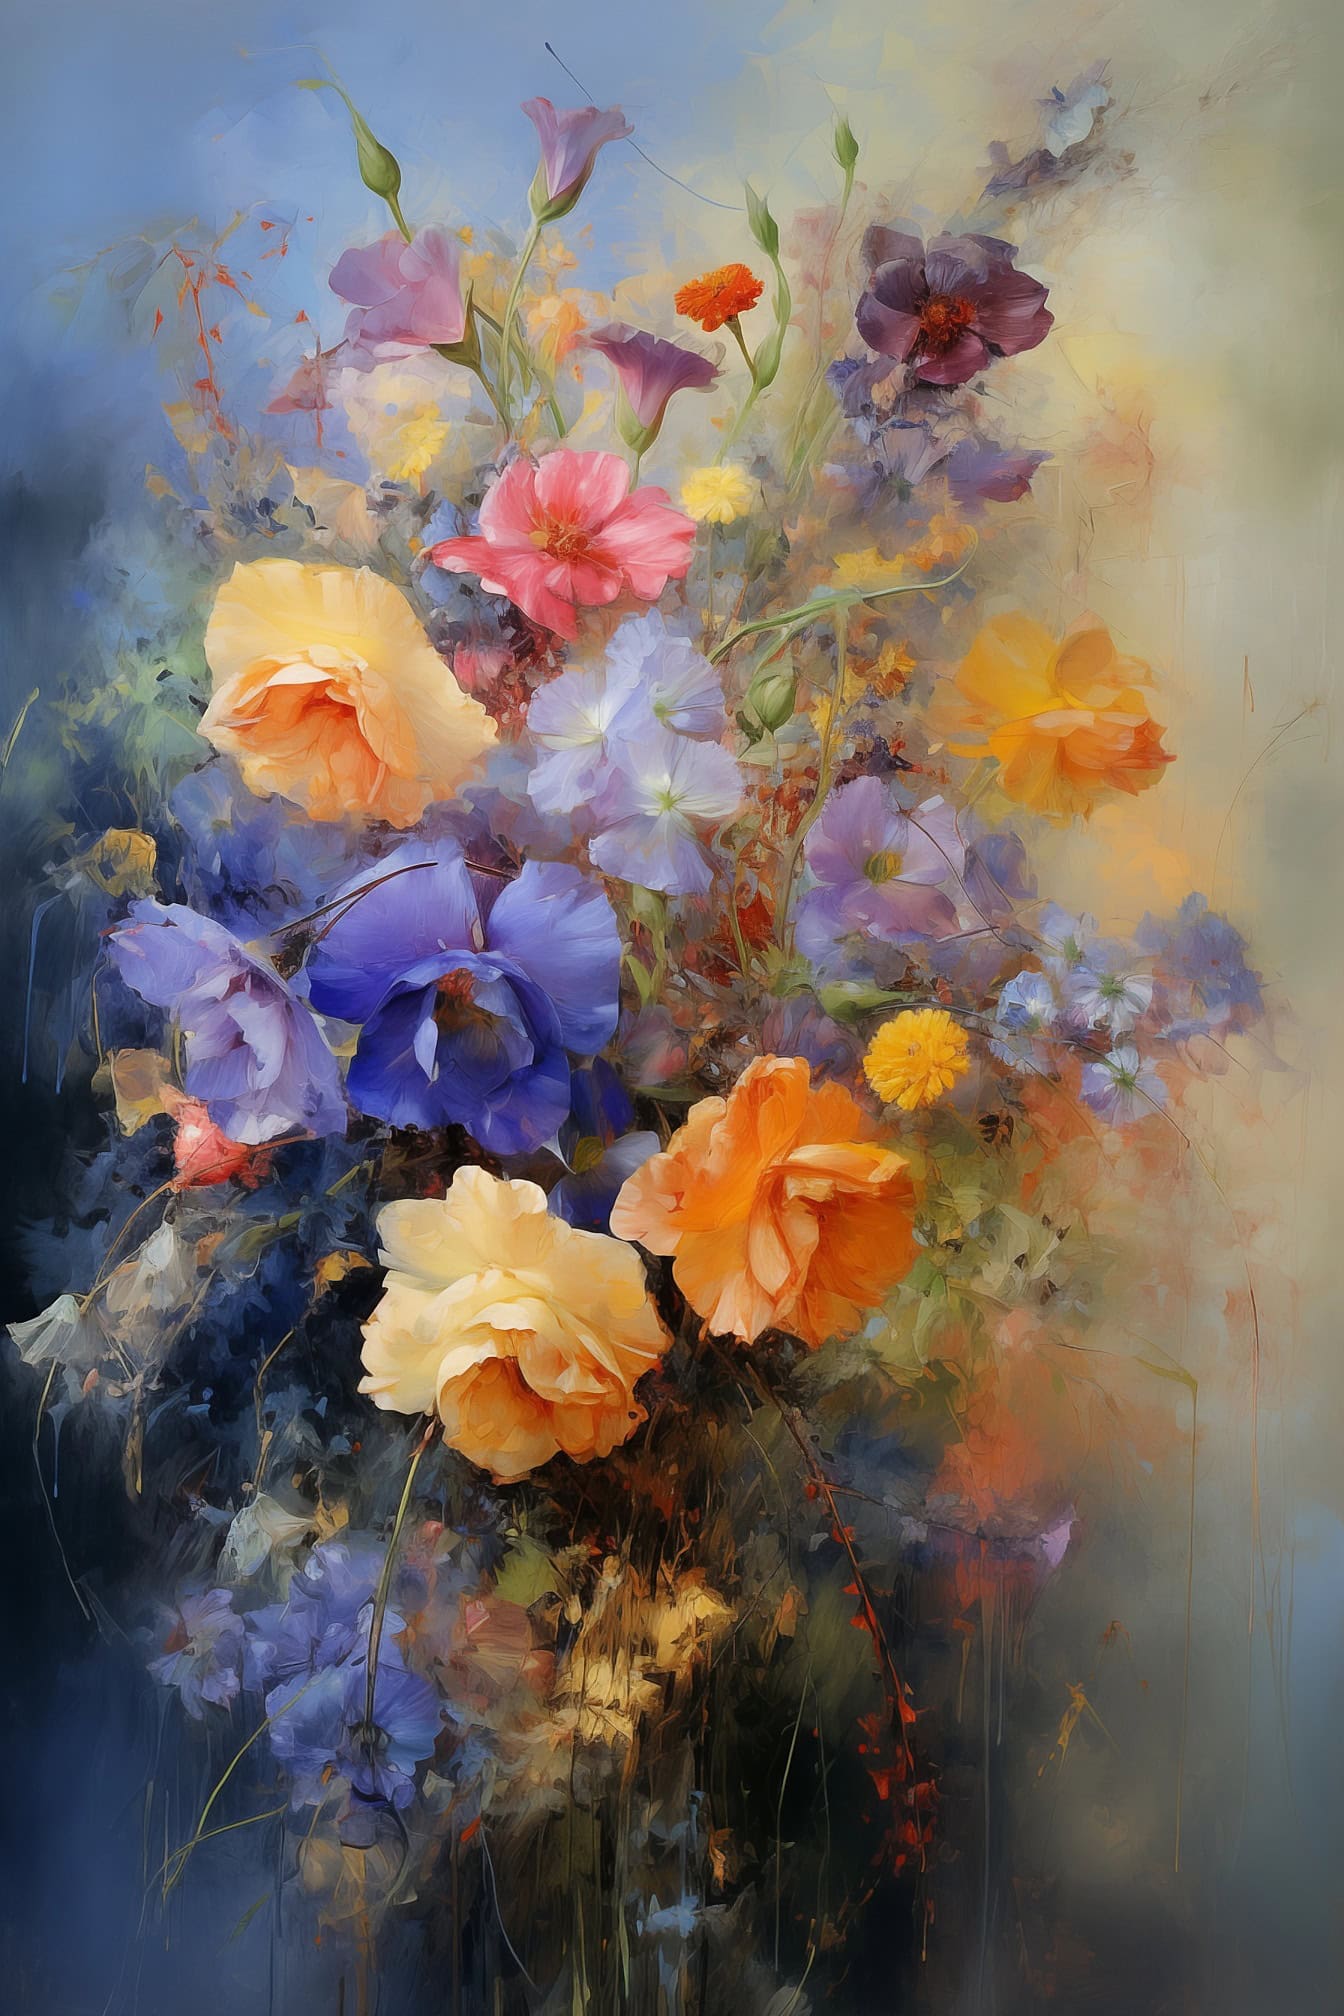 Pintura a óleo criativa da vida morta de flores silvestres coloridas com pintura do gotejamento